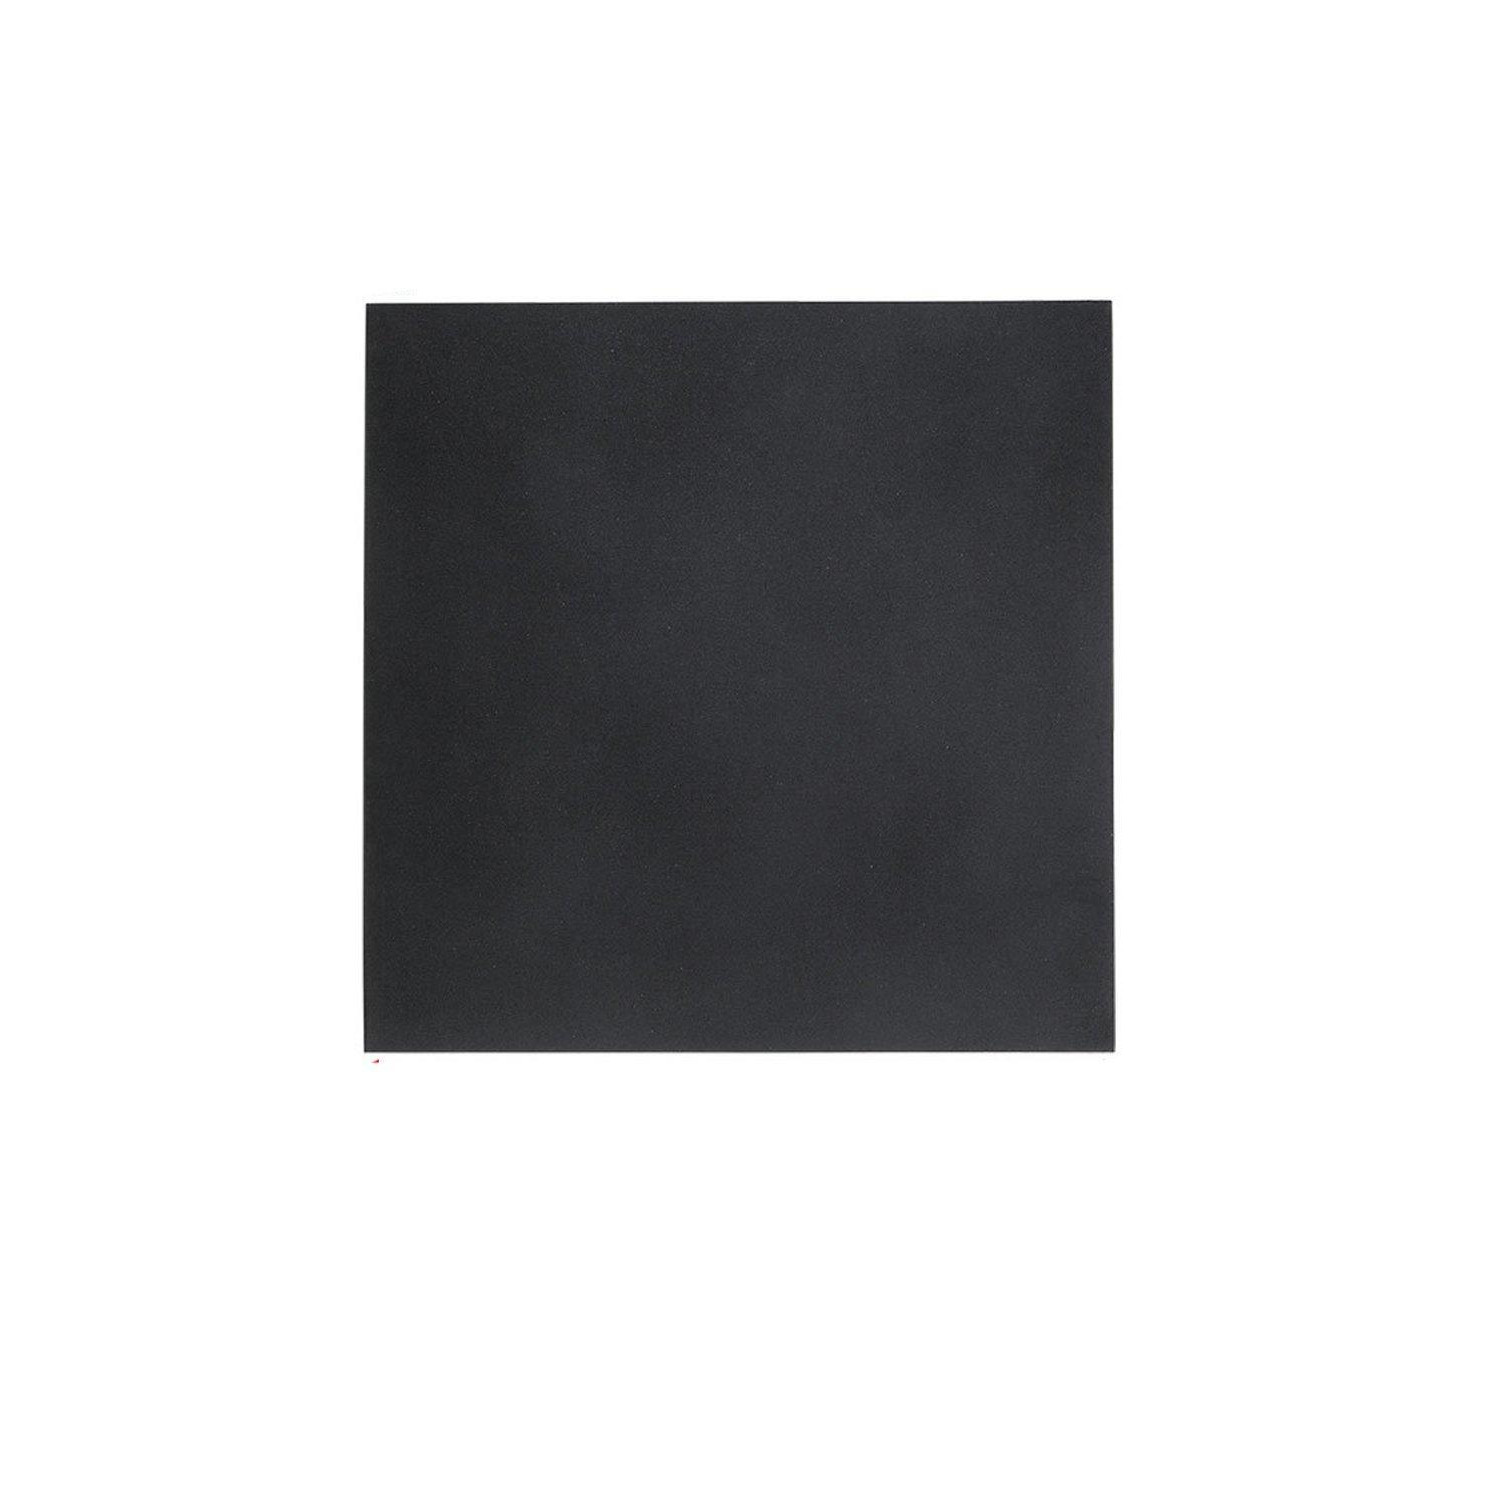 Black Heavy Duty Rubber Mat 100 cm W x 100 cm D x 0.2 cm - image 1